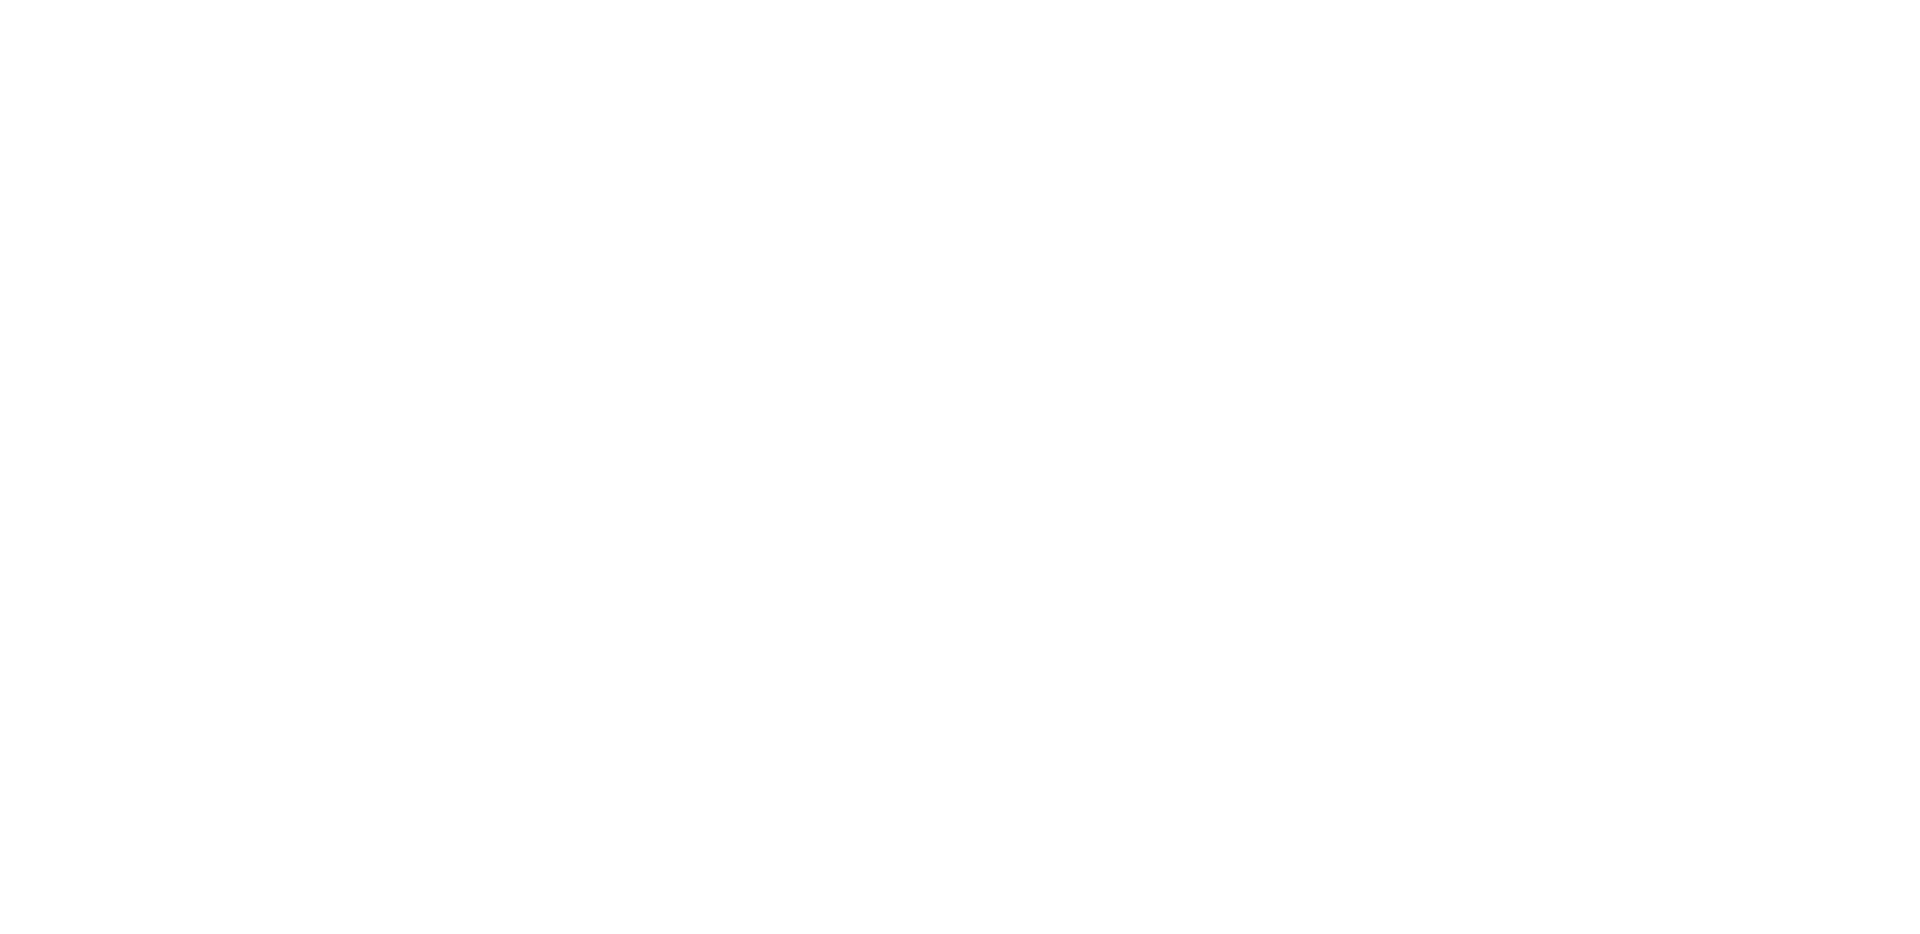 Disfruta de juegos de LightningBox en Starcasino.be